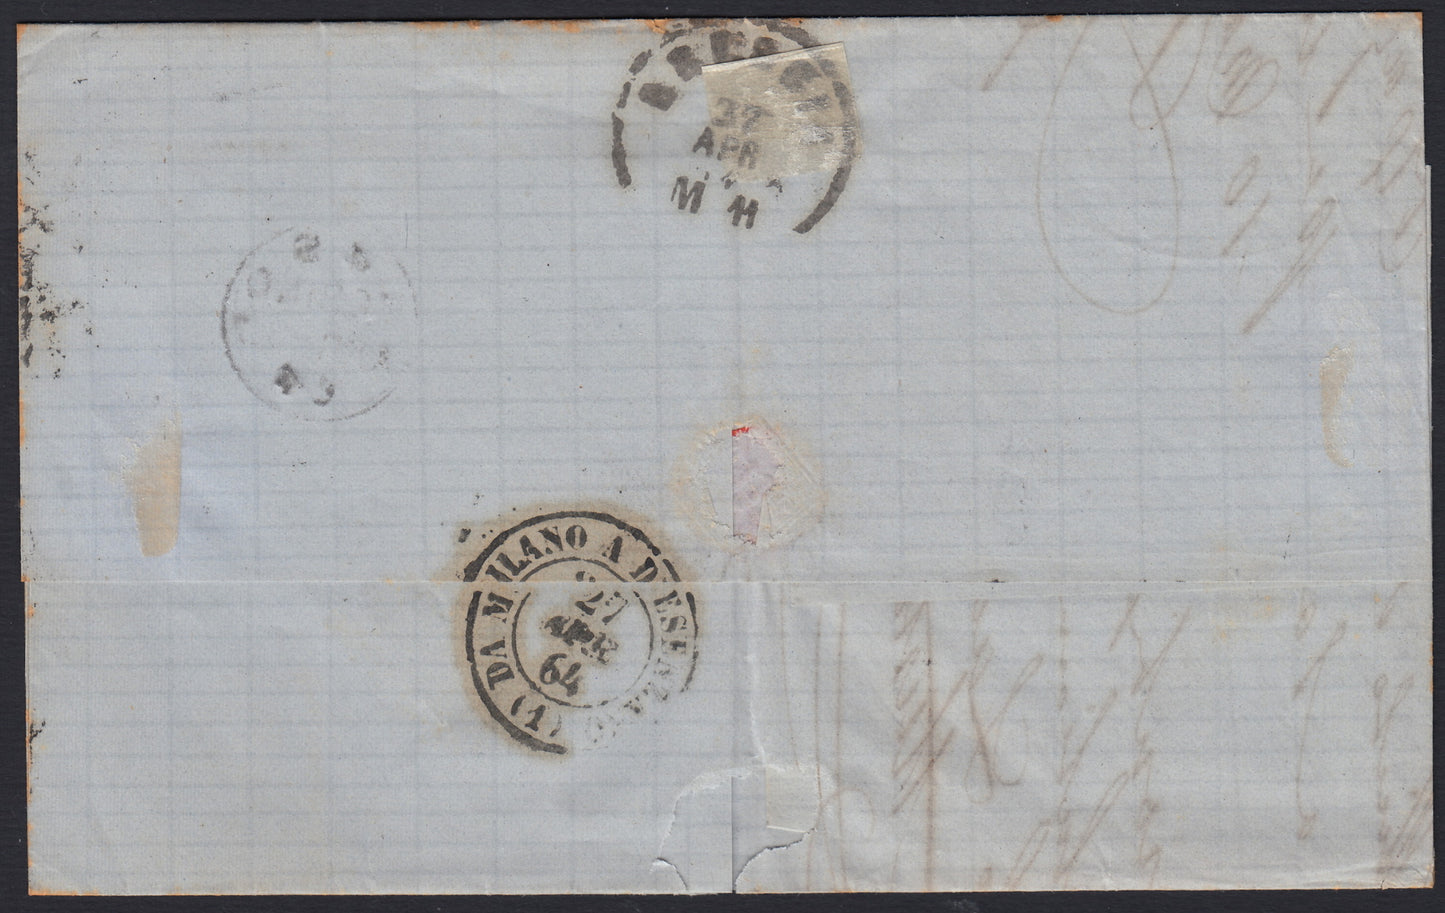 VEII299 - 1864 - De La Rue edición de Londres c. 15 celeste usado con sordina de diamante impreso en Turín 26/4/64 sobre carta para Brescia (L18)